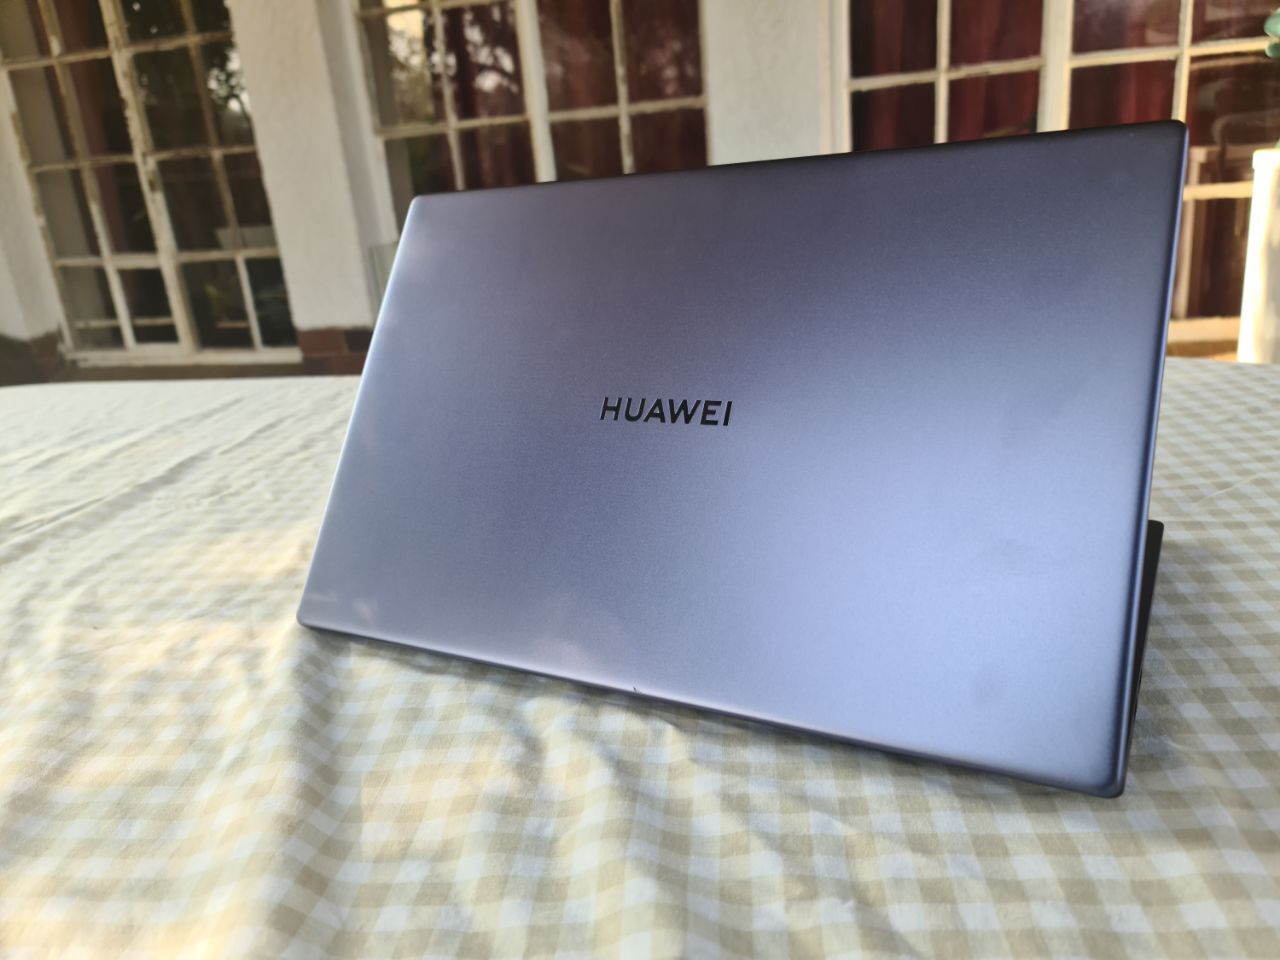 Huawei MateBook D Review: Sleek, Attractive AMD Ryzen Powered